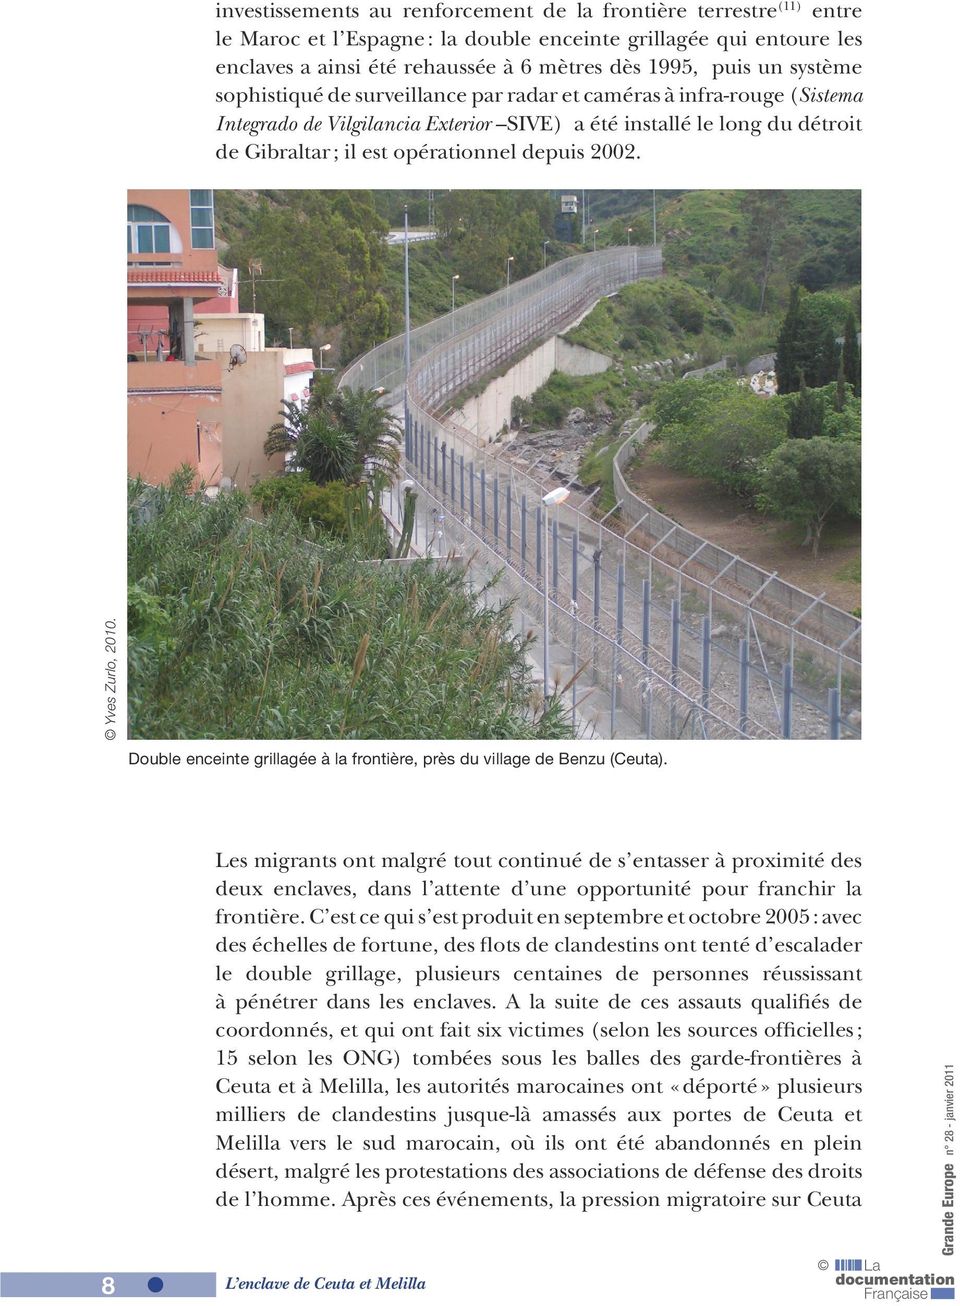 2002. Yves Zurlo, 2010. Double enceinte grillagée à la frontière, près du village de Benzu (Ceuta).